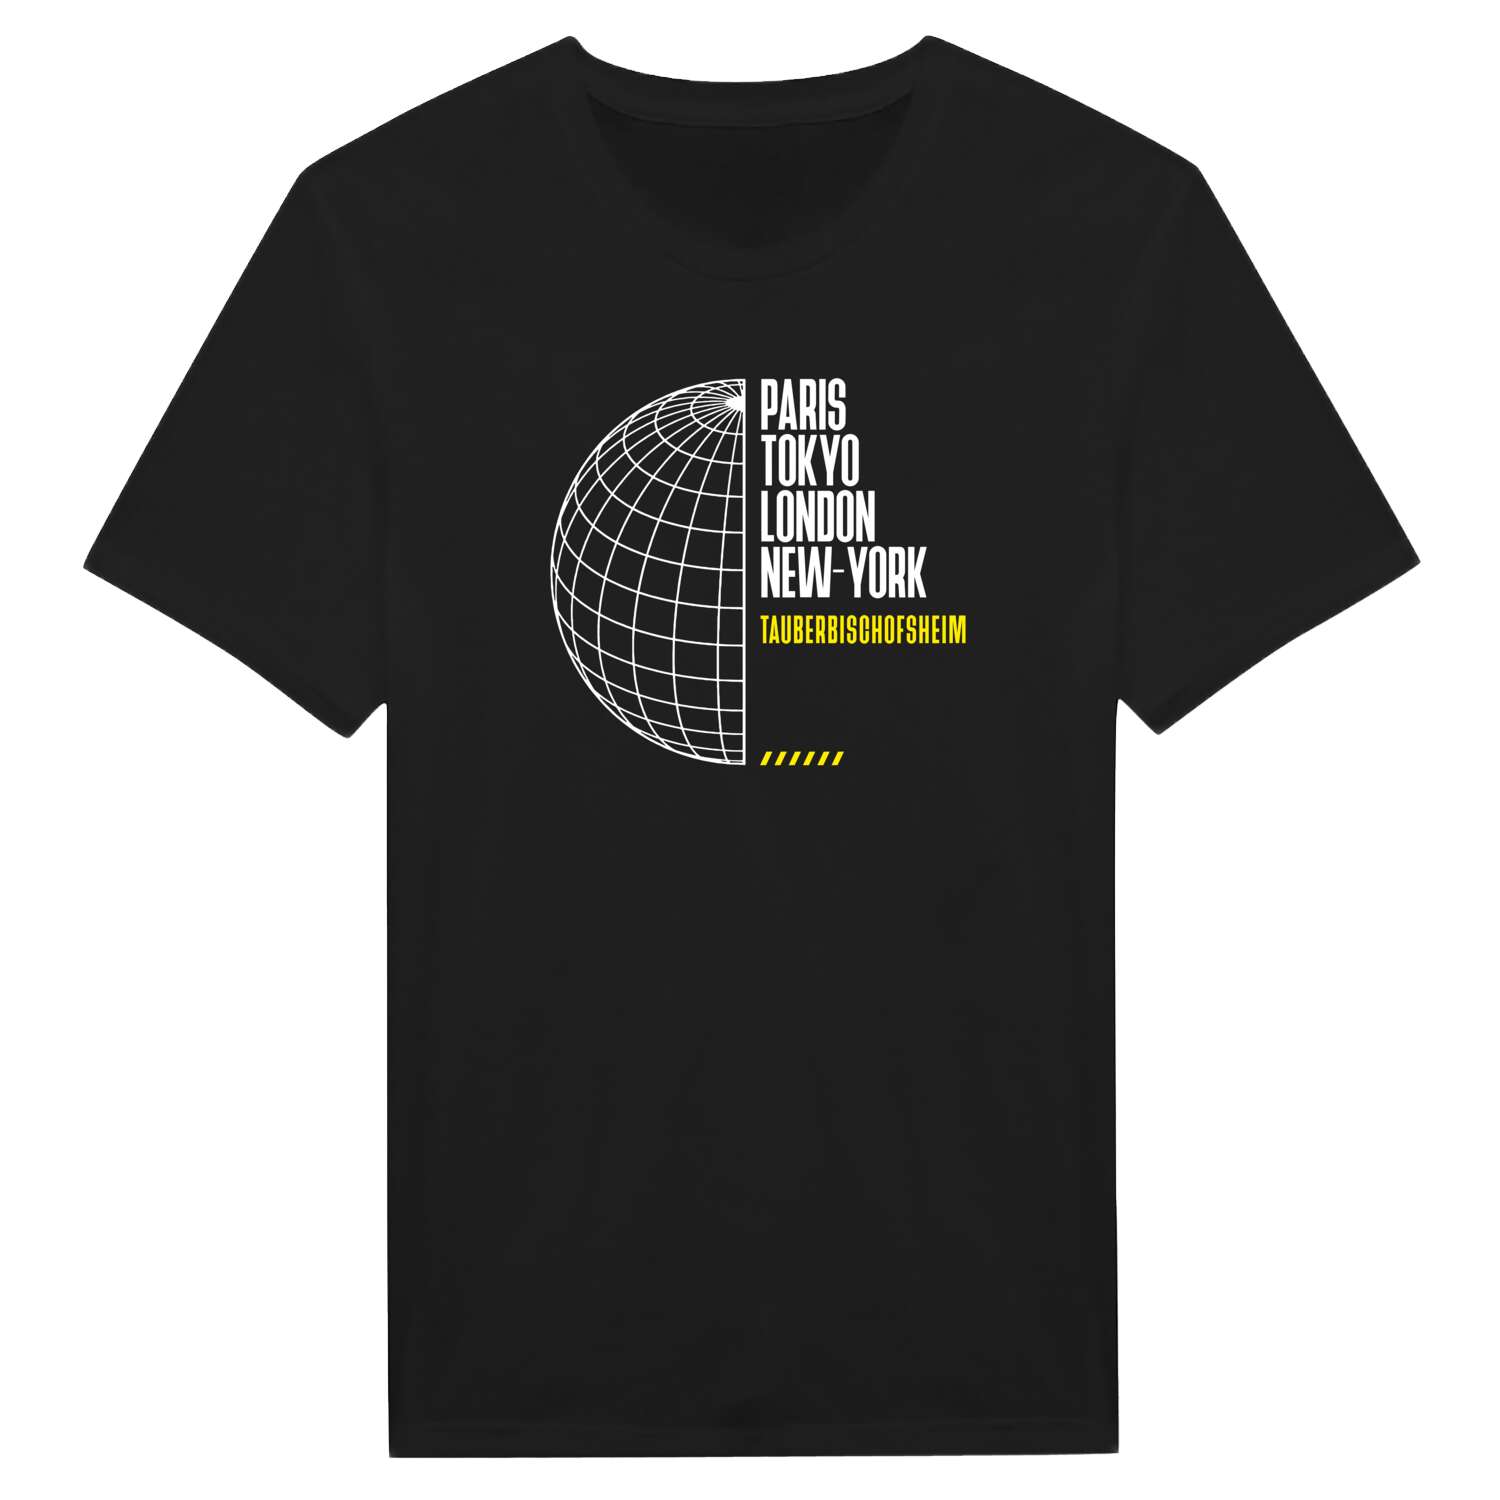 Tauberbischofsheim T-Shirt »Paris Tokyo London«